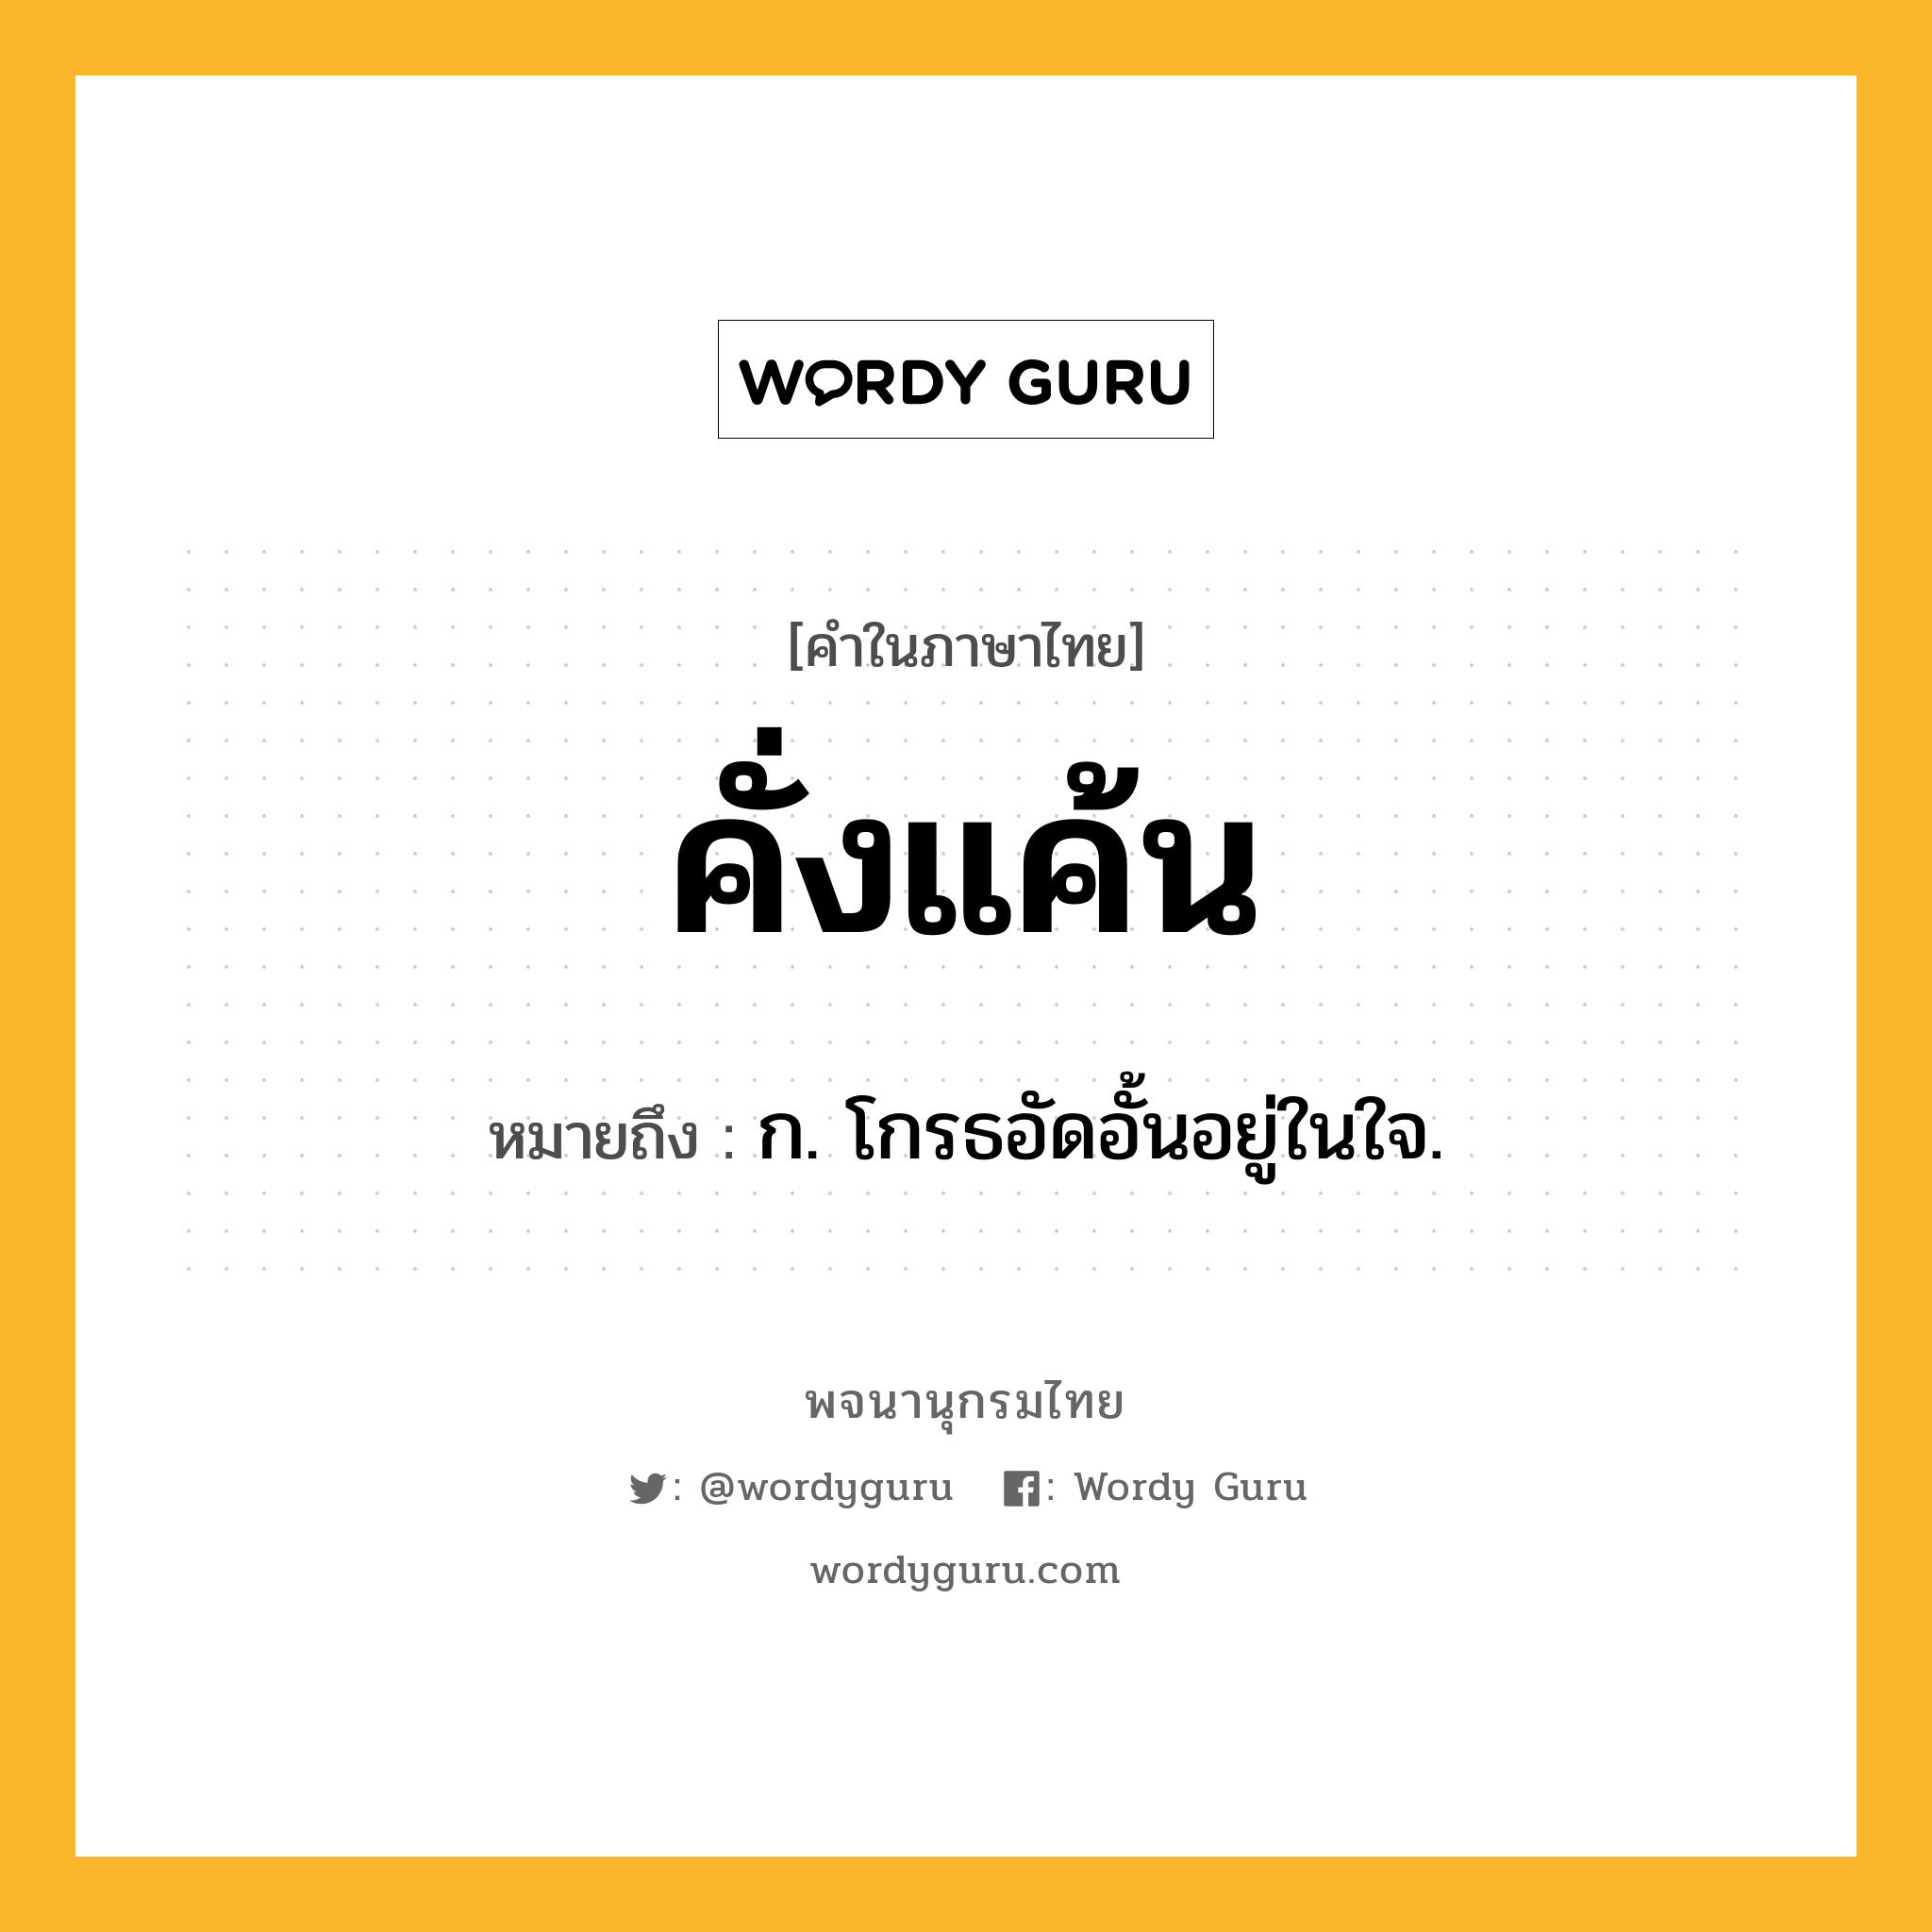 คั่งแค้น ความหมาย หมายถึงอะไร?, คำในภาษาไทย คั่งแค้น หมายถึง ก. โกรธอัดอั้นอยู่ในใจ.